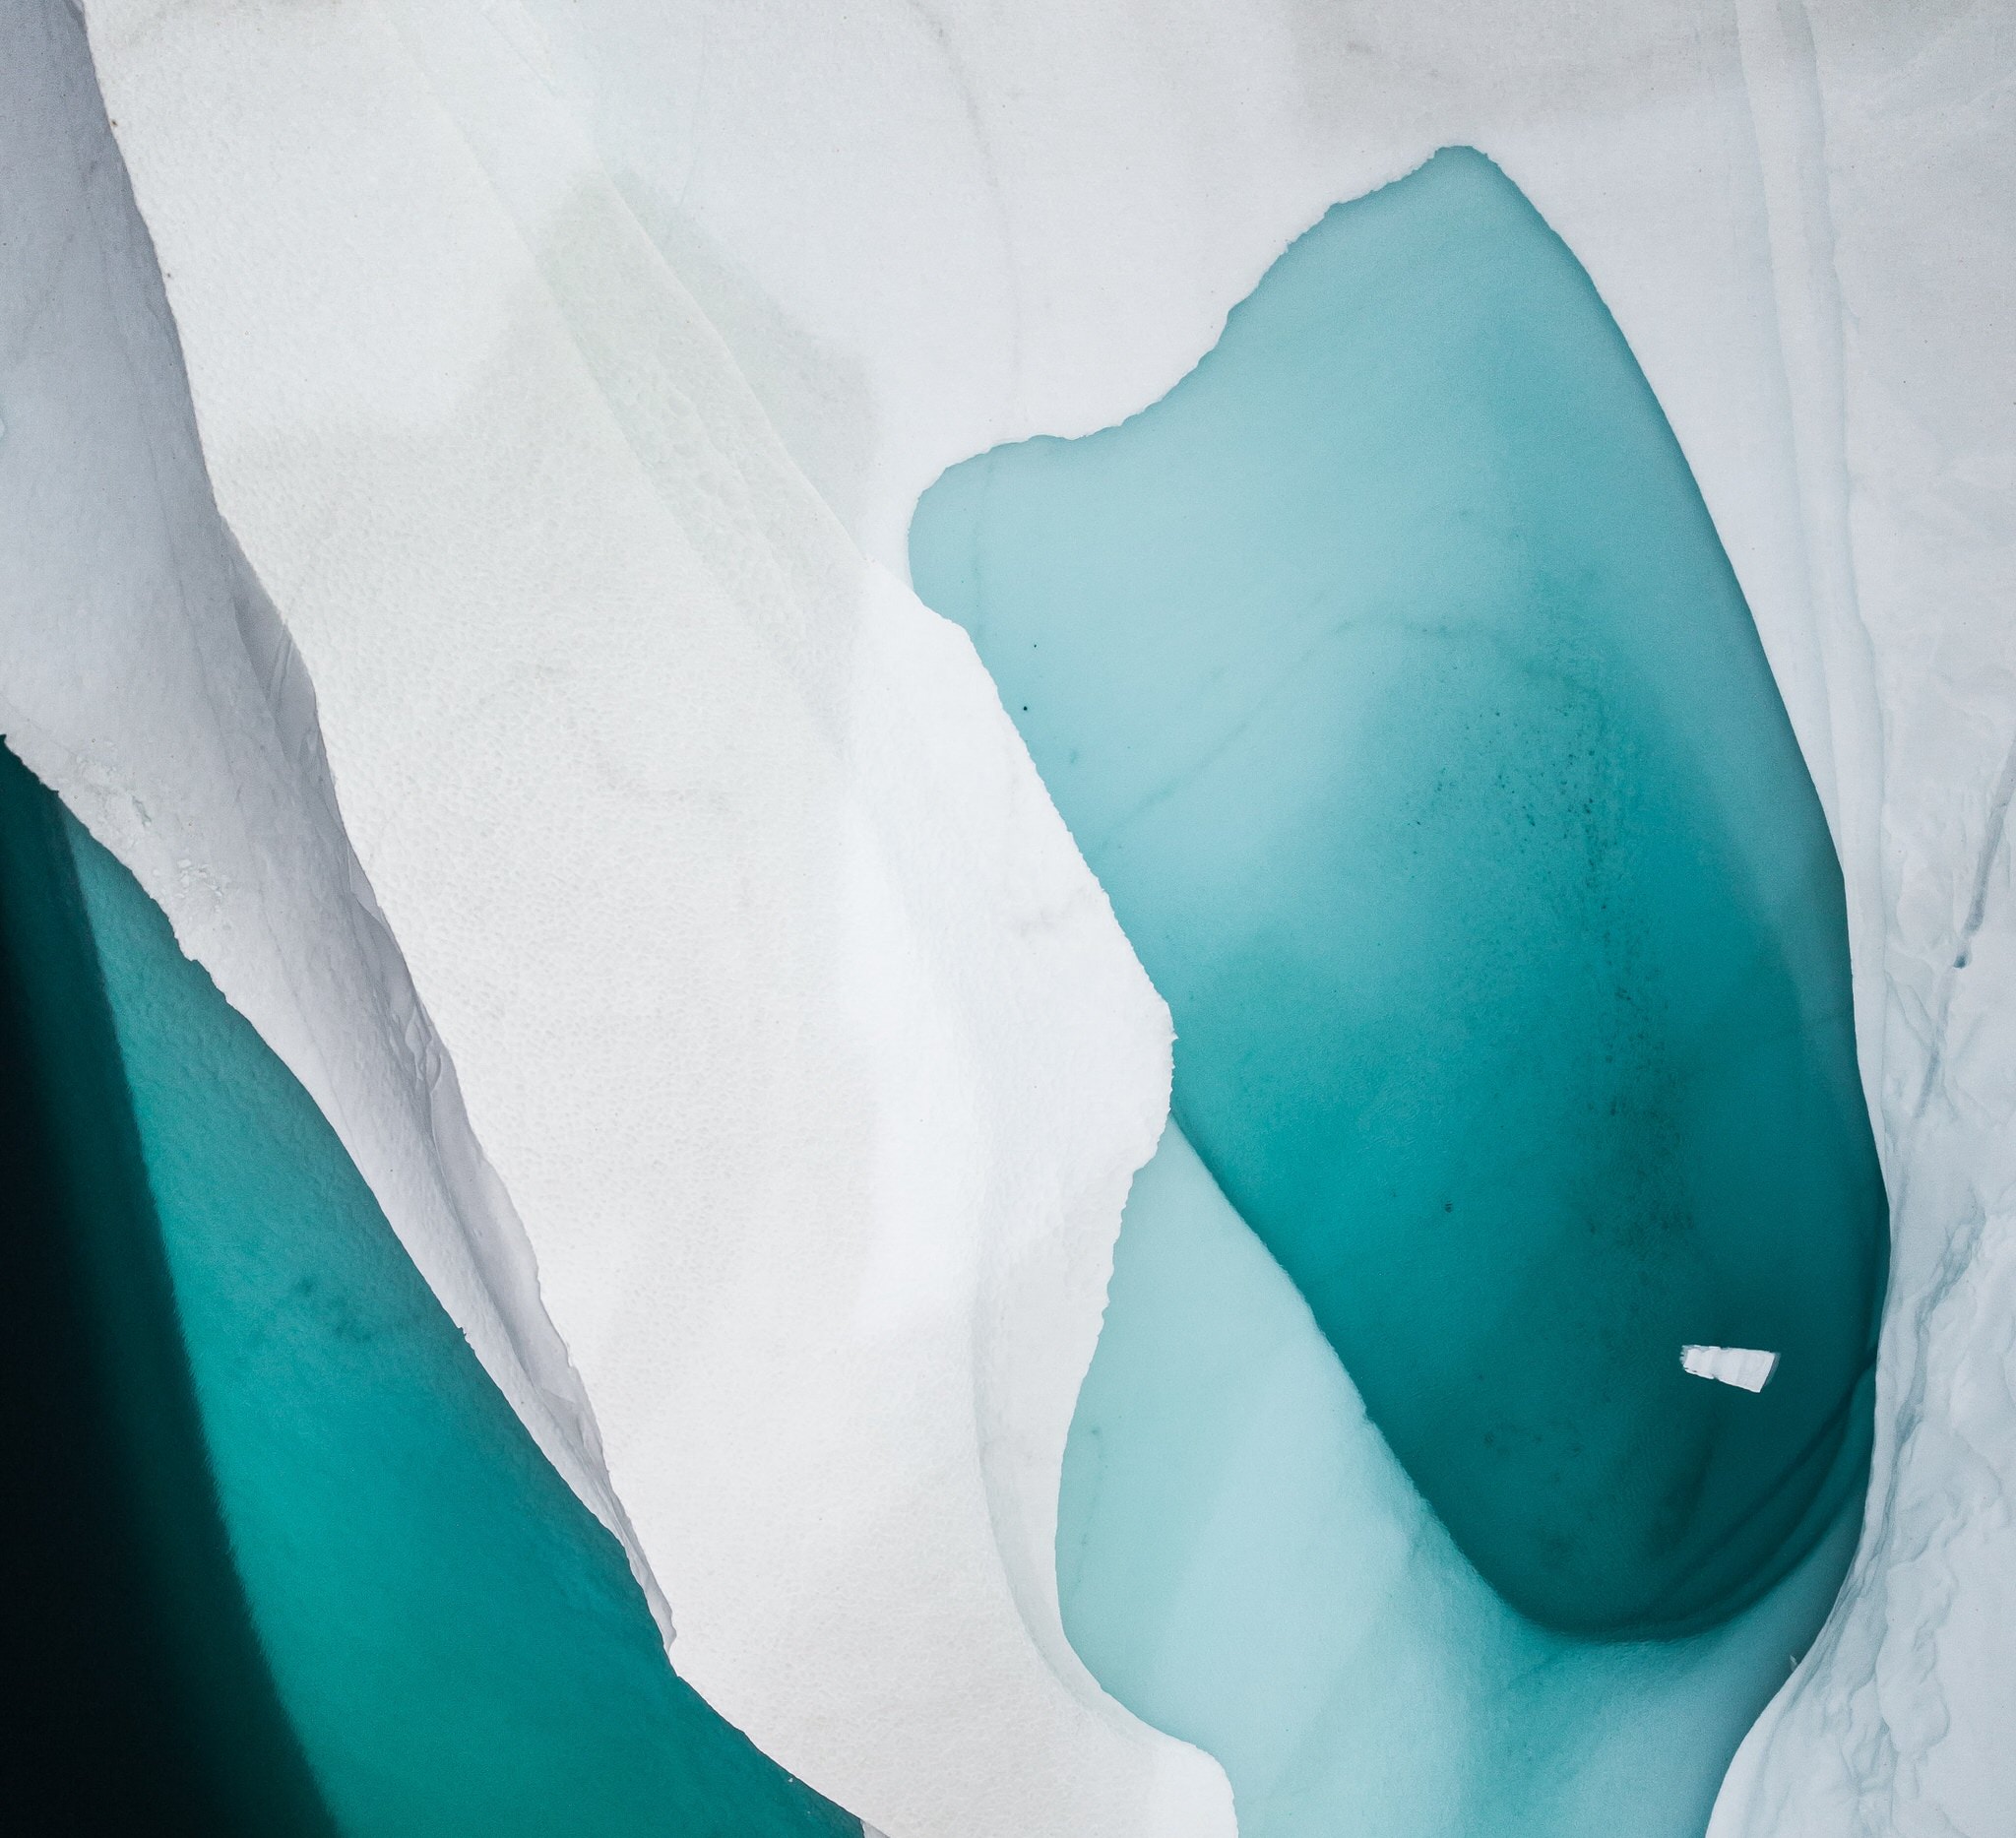 Hơn 12 tỷ tấn băng tại Greenland đã bị tan chảy chỉ trong vòng một ngày